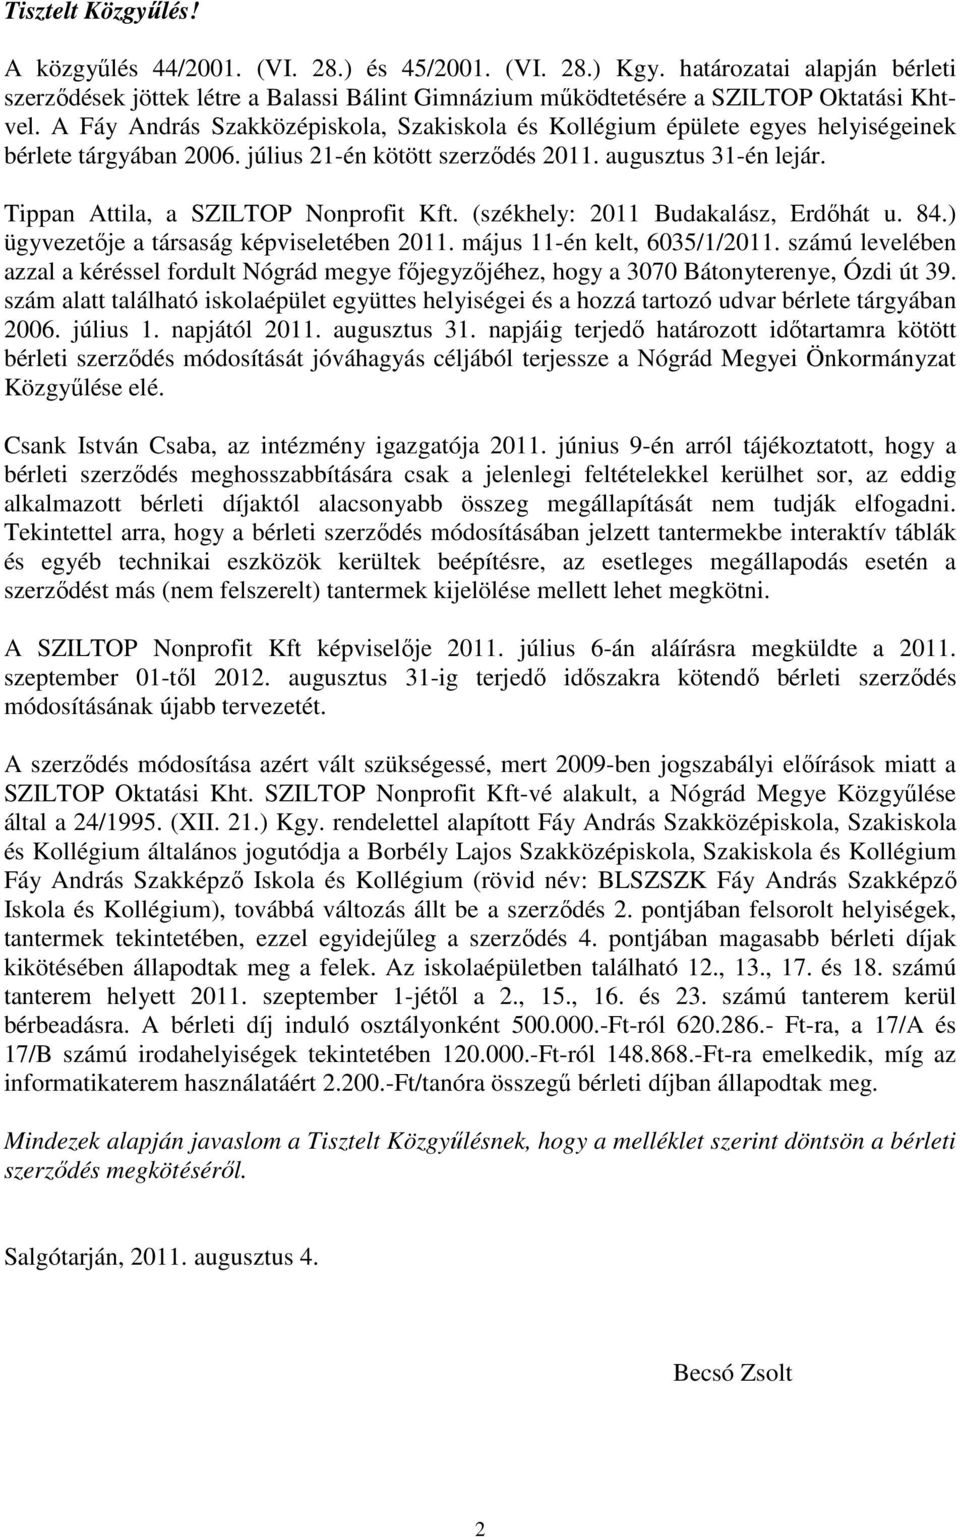 Tippan Attila, a SZILTOP Nonprofit Kft. (székhely: 2011 Budakalász, Erdőhát u. 84.) ügyvezetője a társaság képviseletében 2011. május 11-én kelt, 6035/1/2011.